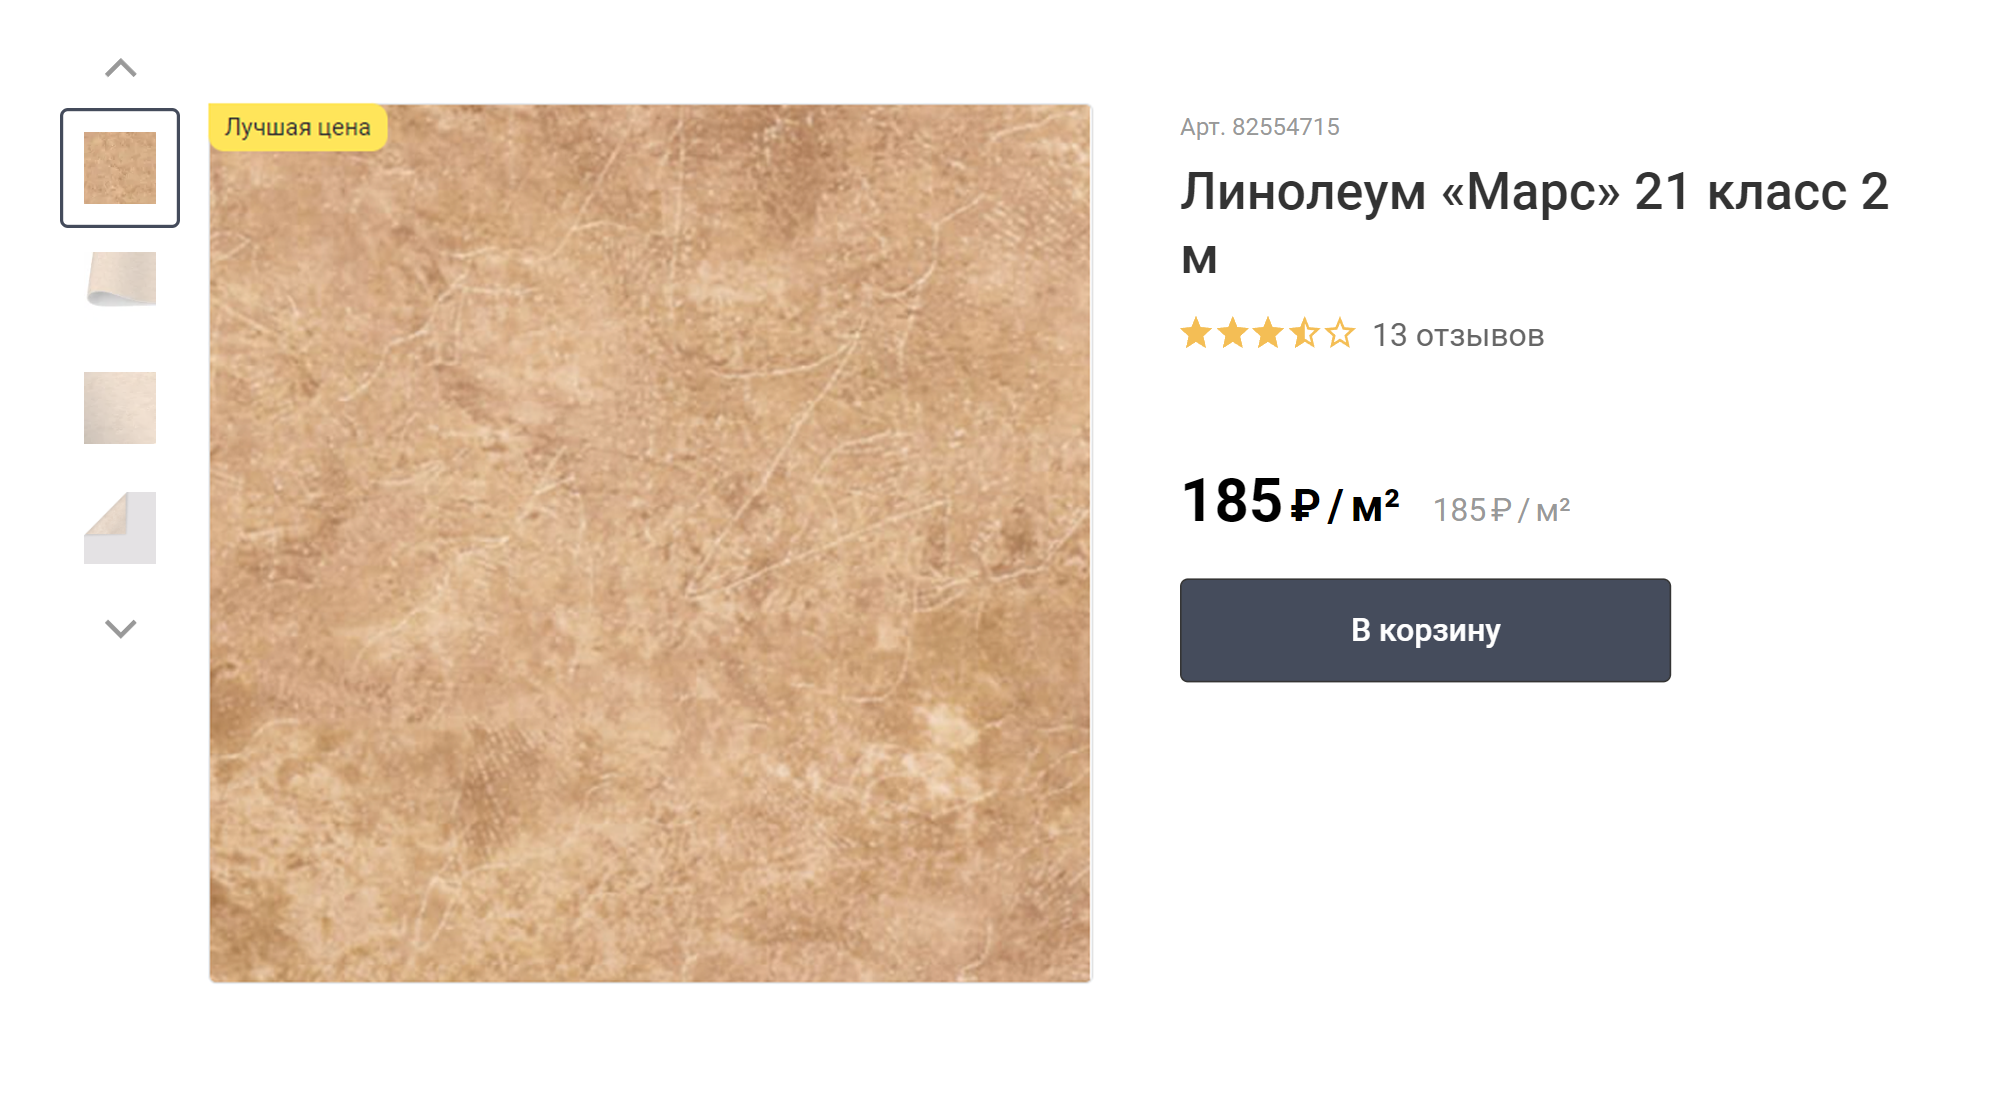 Самый простой линолеум можно купить по цене 280 ₽ за м². Источник: leroymerlin.ru